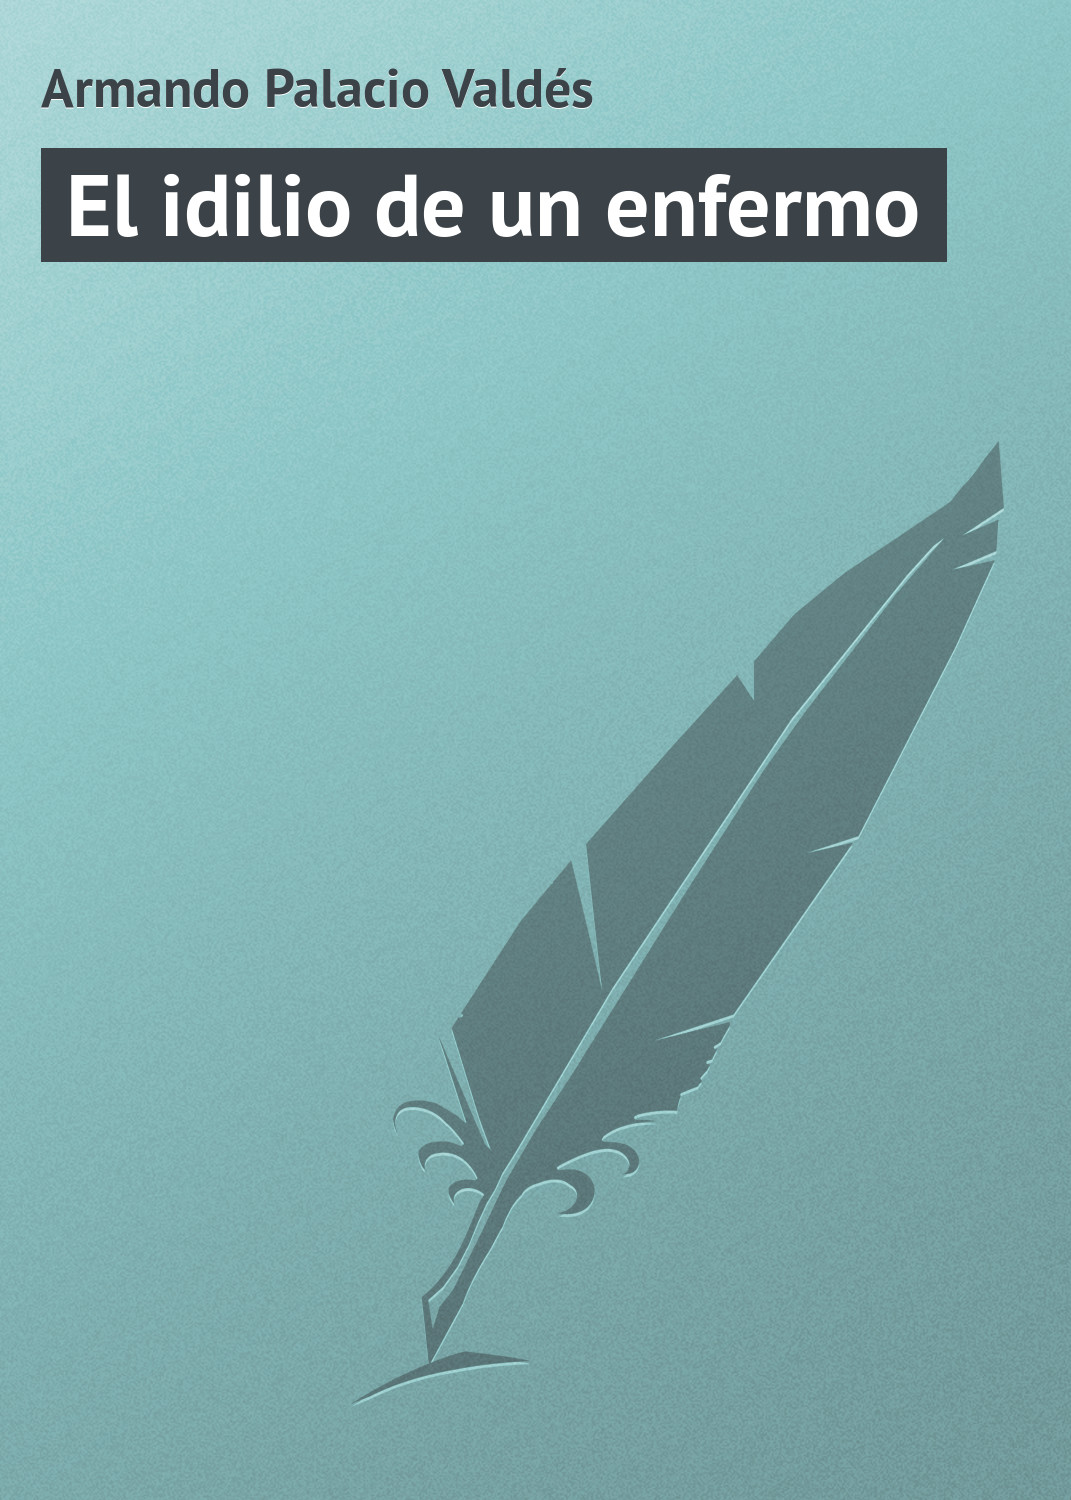 Книга El idilio de un enfermo из серии , созданная Armando Palacio, может относится к жанру Зарубежная старинная литература, Зарубежная классика. Стоимость электронной книги El idilio de un enfermo с идентификатором 21107766 составляет 5.99 руб.